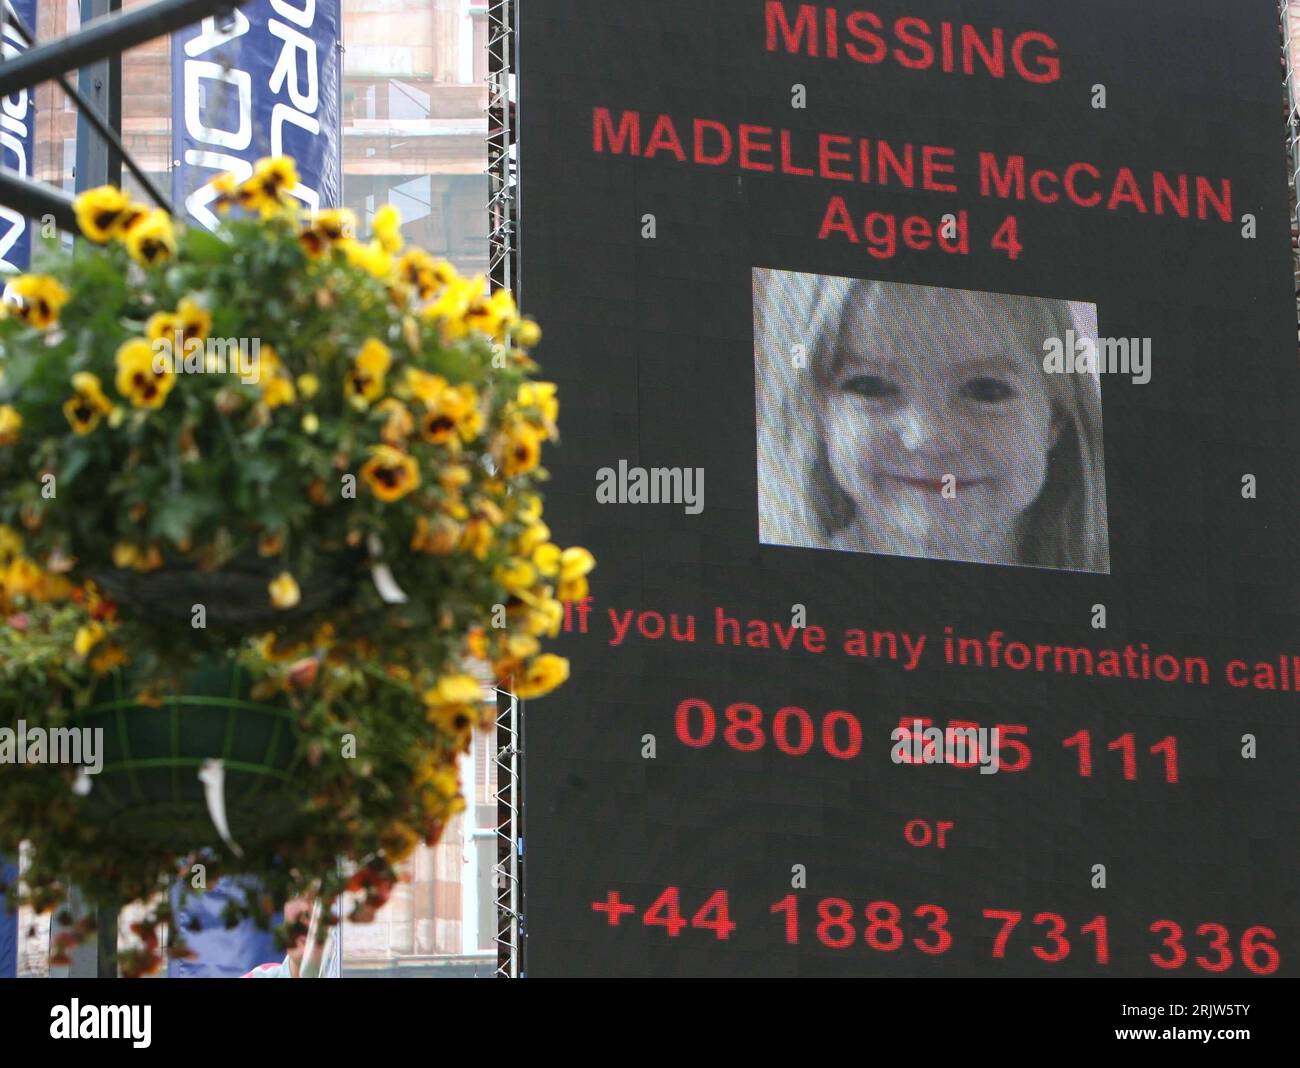 Vermisstenanzeige der entführten Madeleine McCann GBR in Glasgow PUBLICATIONxNOTxINxCHN Stock Photo